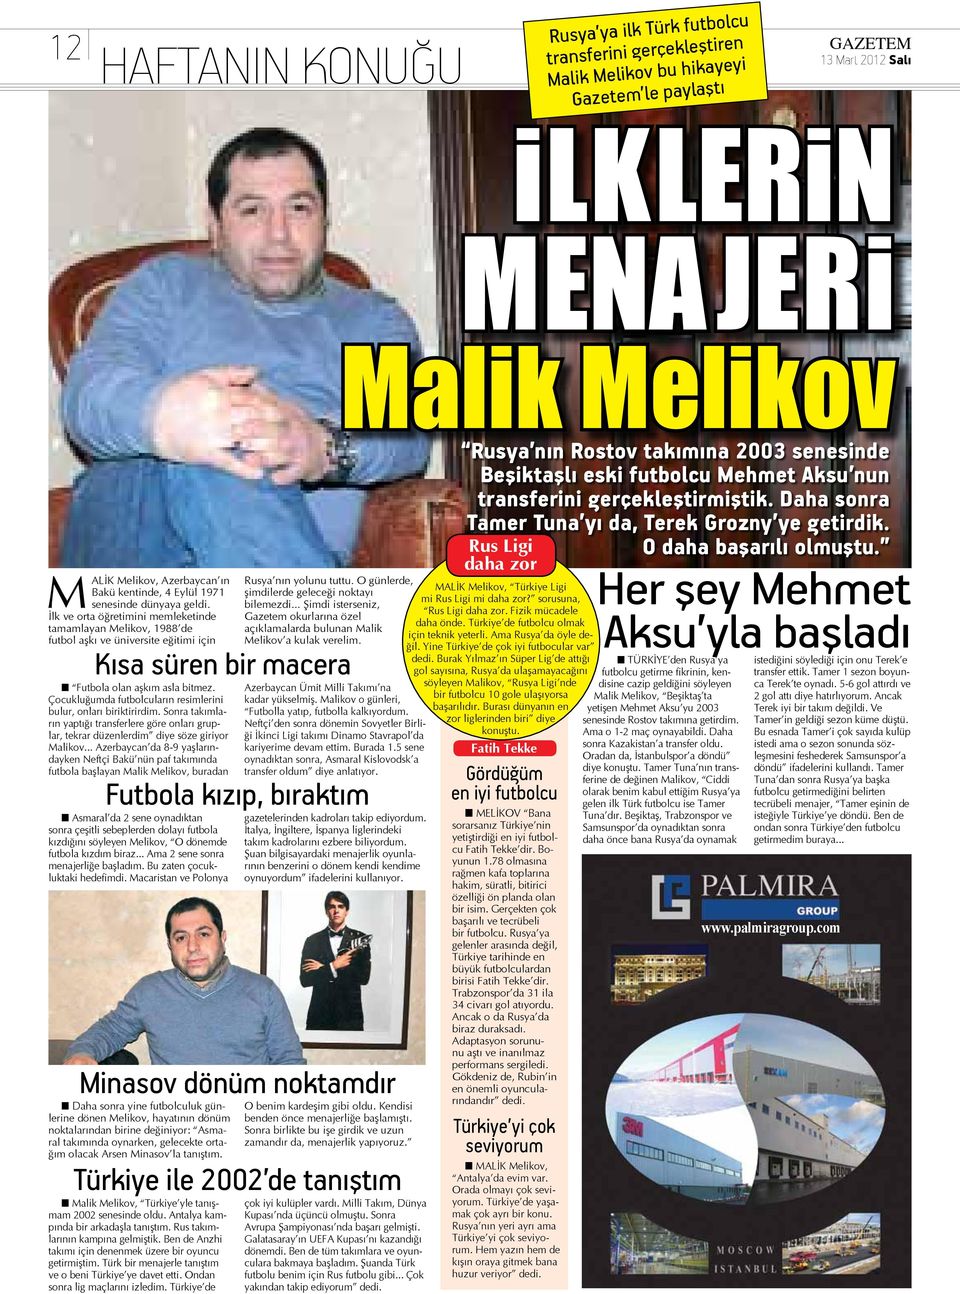 O günlerde, şimdilerde geleceği noktayı bilemezdi... Şimdi isterseniz, Gazetem okurlarına özel açıklamalarda bulunan Malik Melikov a kulak verelim.